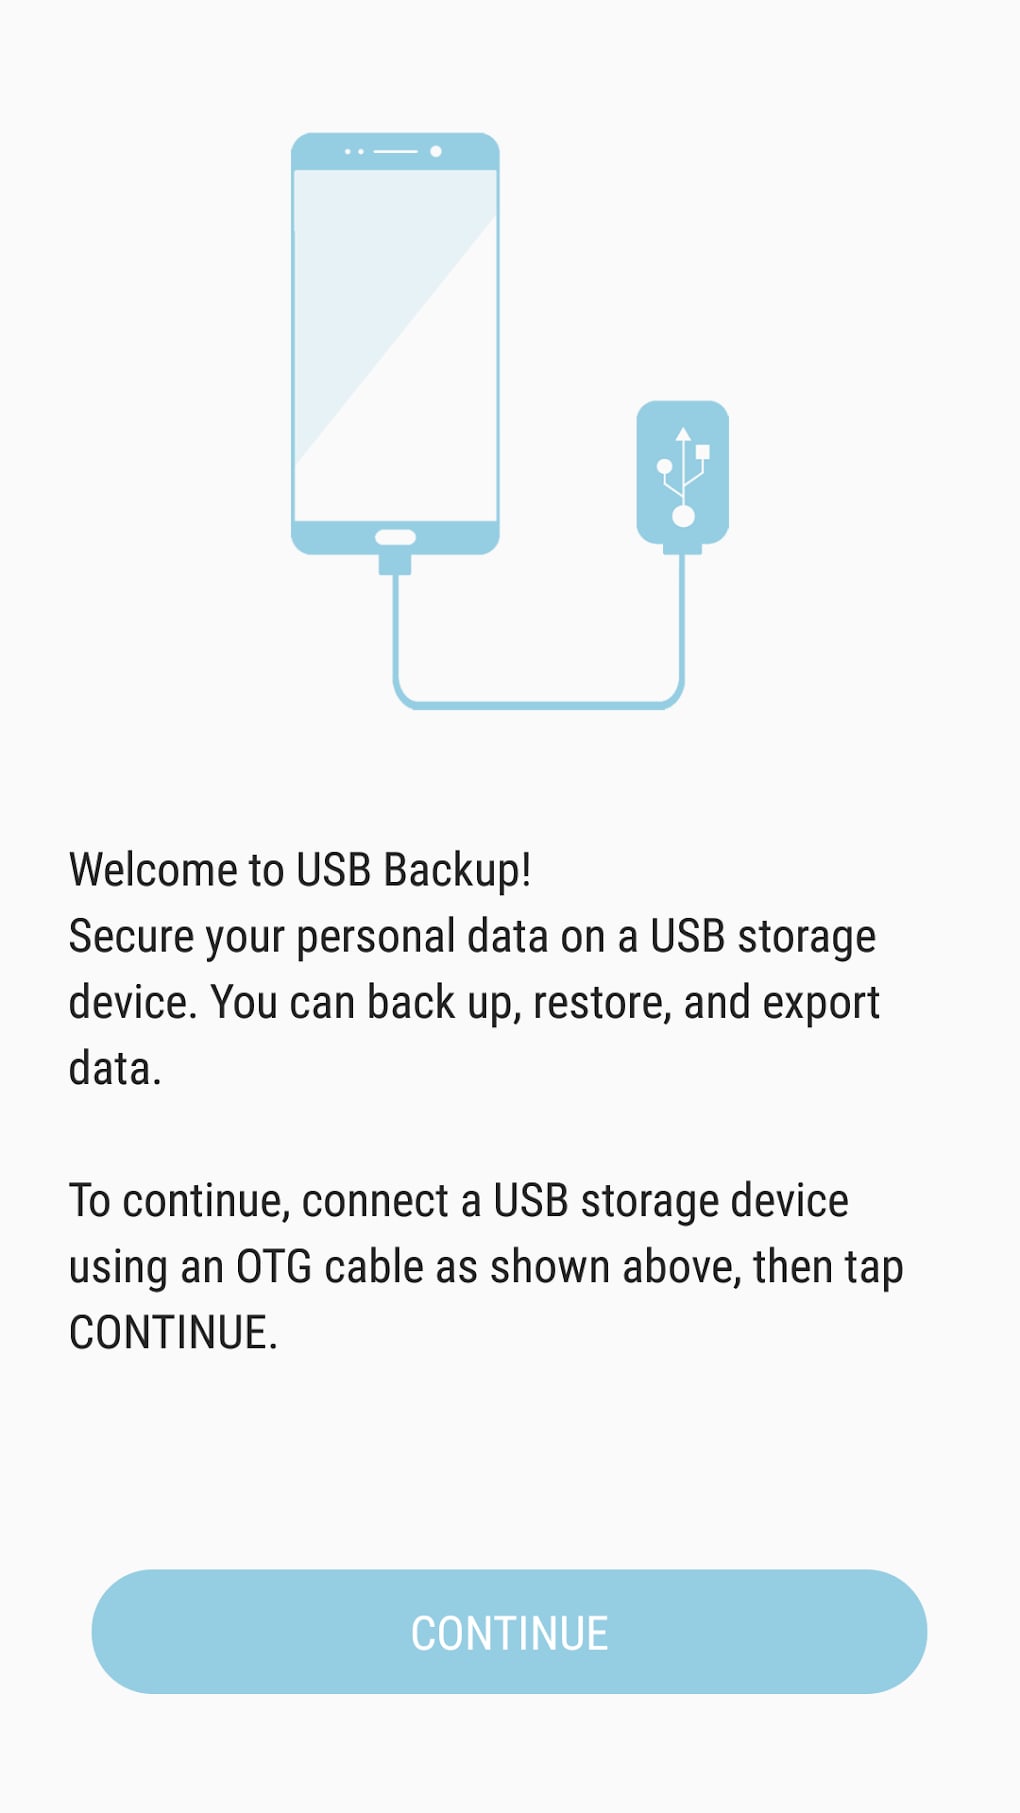 Klappe aflevere alkove USB Backup APK for Android - Download